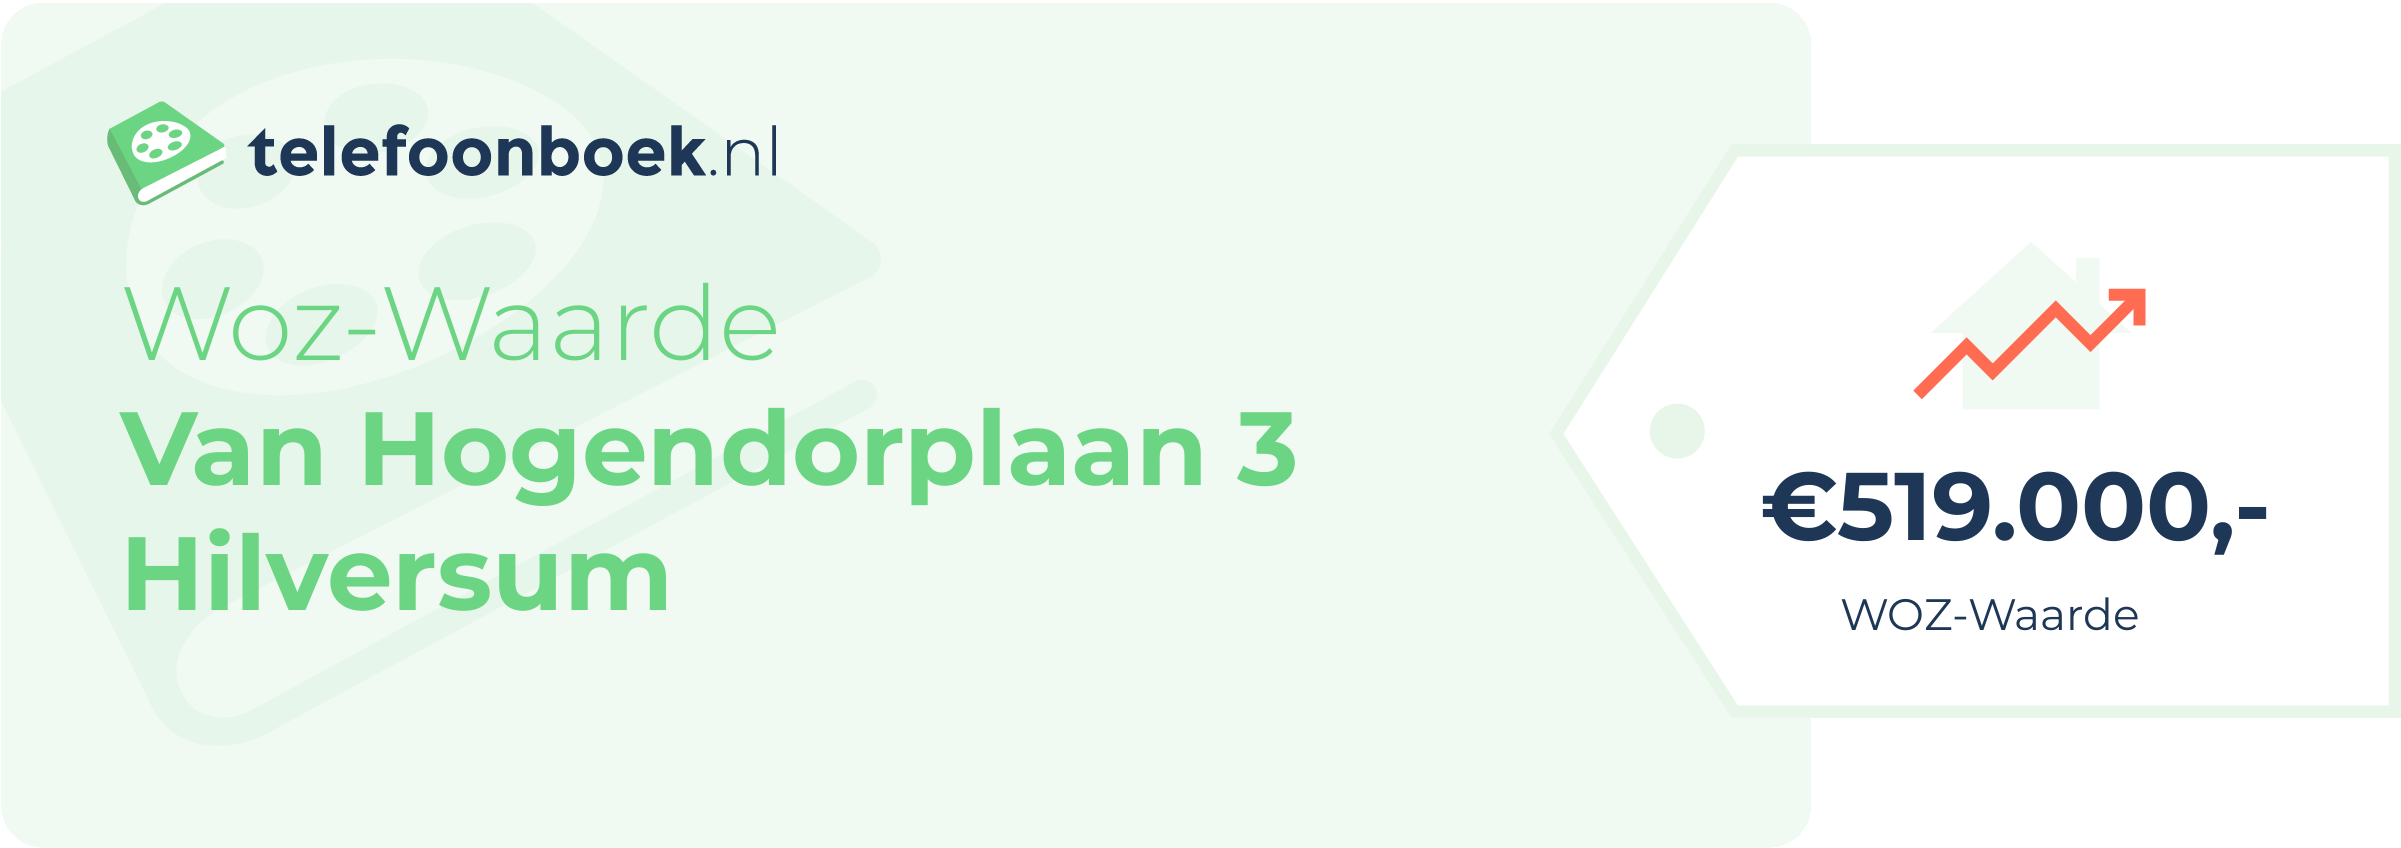 WOZ-waarde Van Hogendorplaan 3 Hilversum